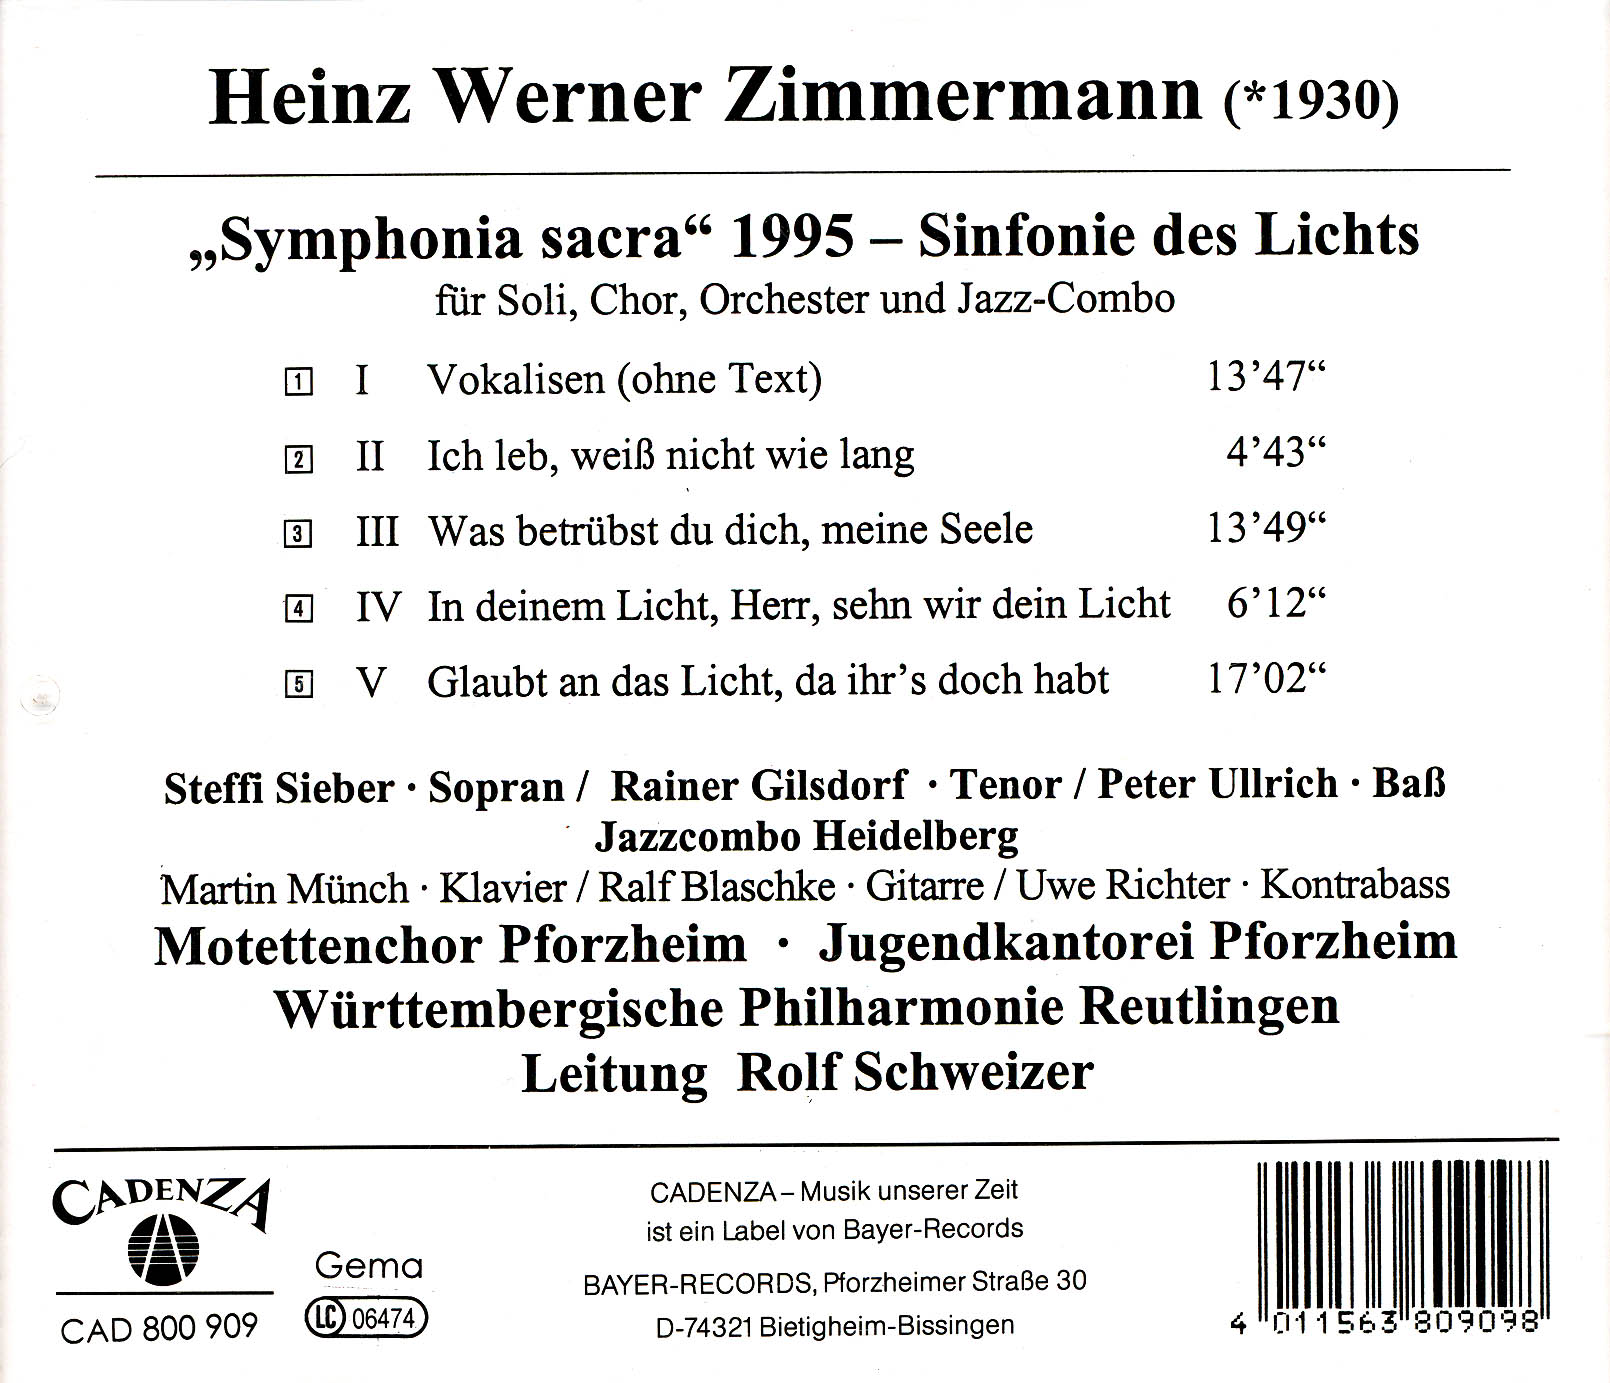 Heinz Werner Zimmermann - Symphonia sacra